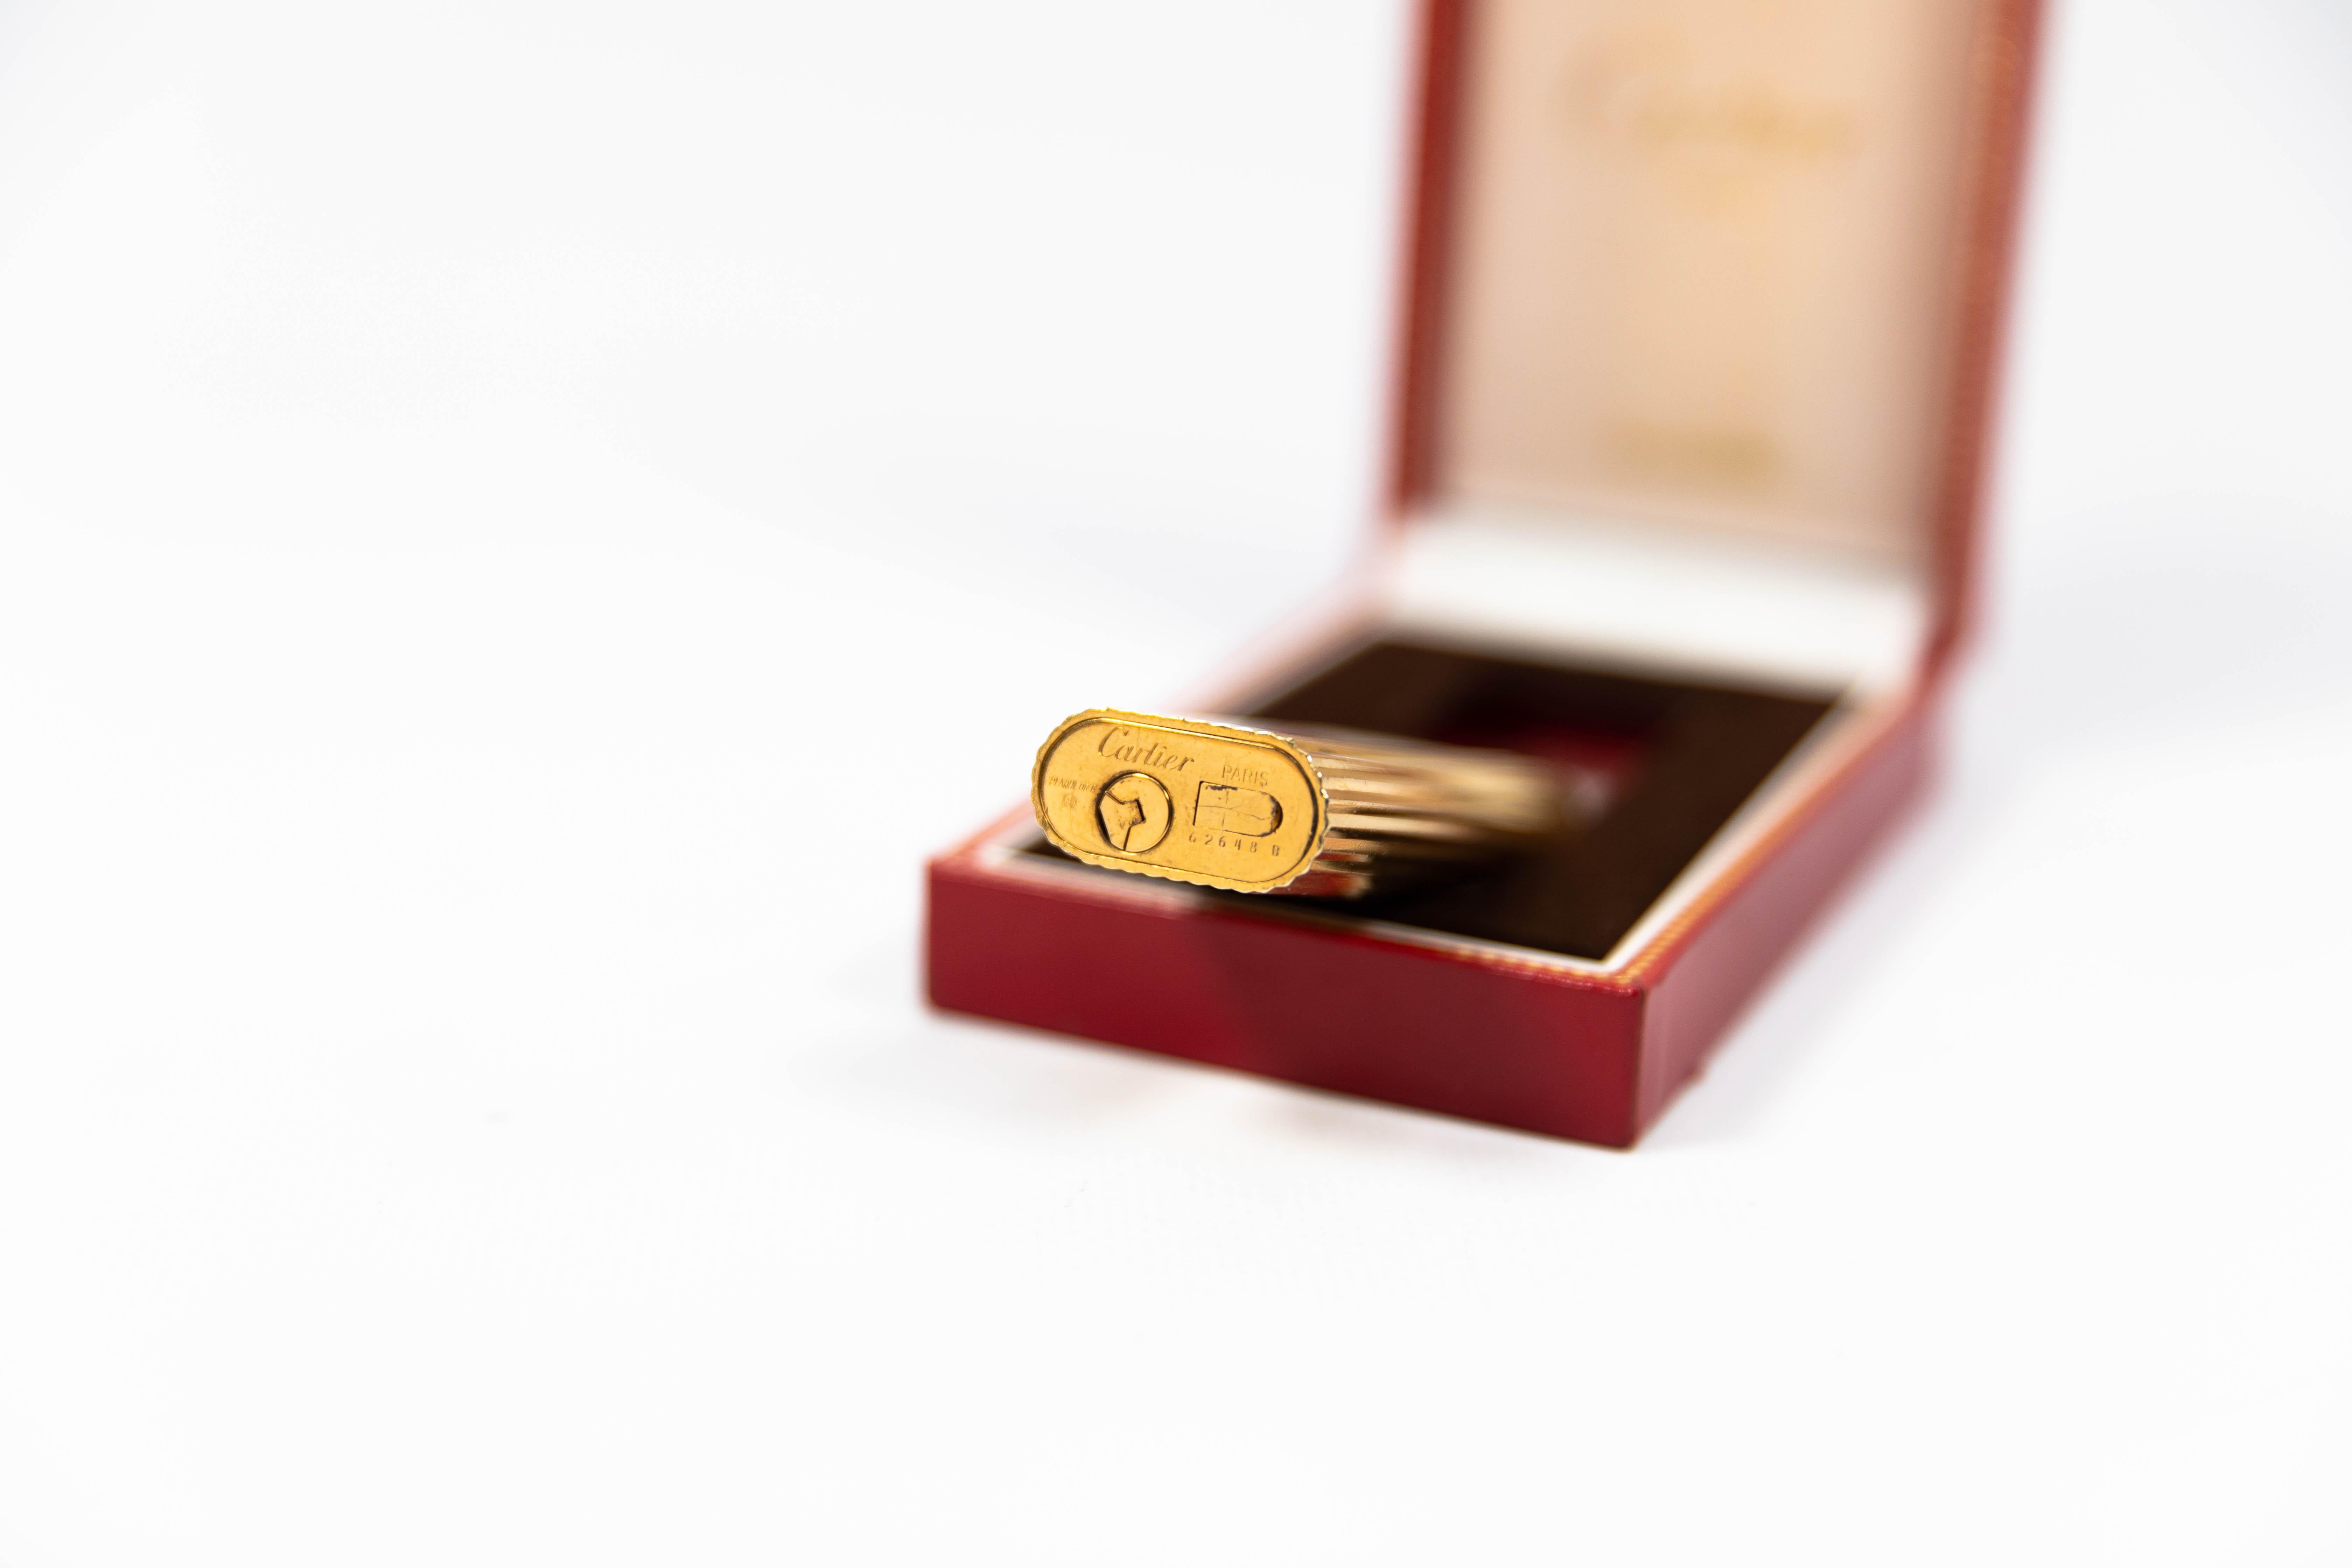 Vintage Cartier Les Must lighter, vergoldet, graviert, komplett in Box, Vintage 1